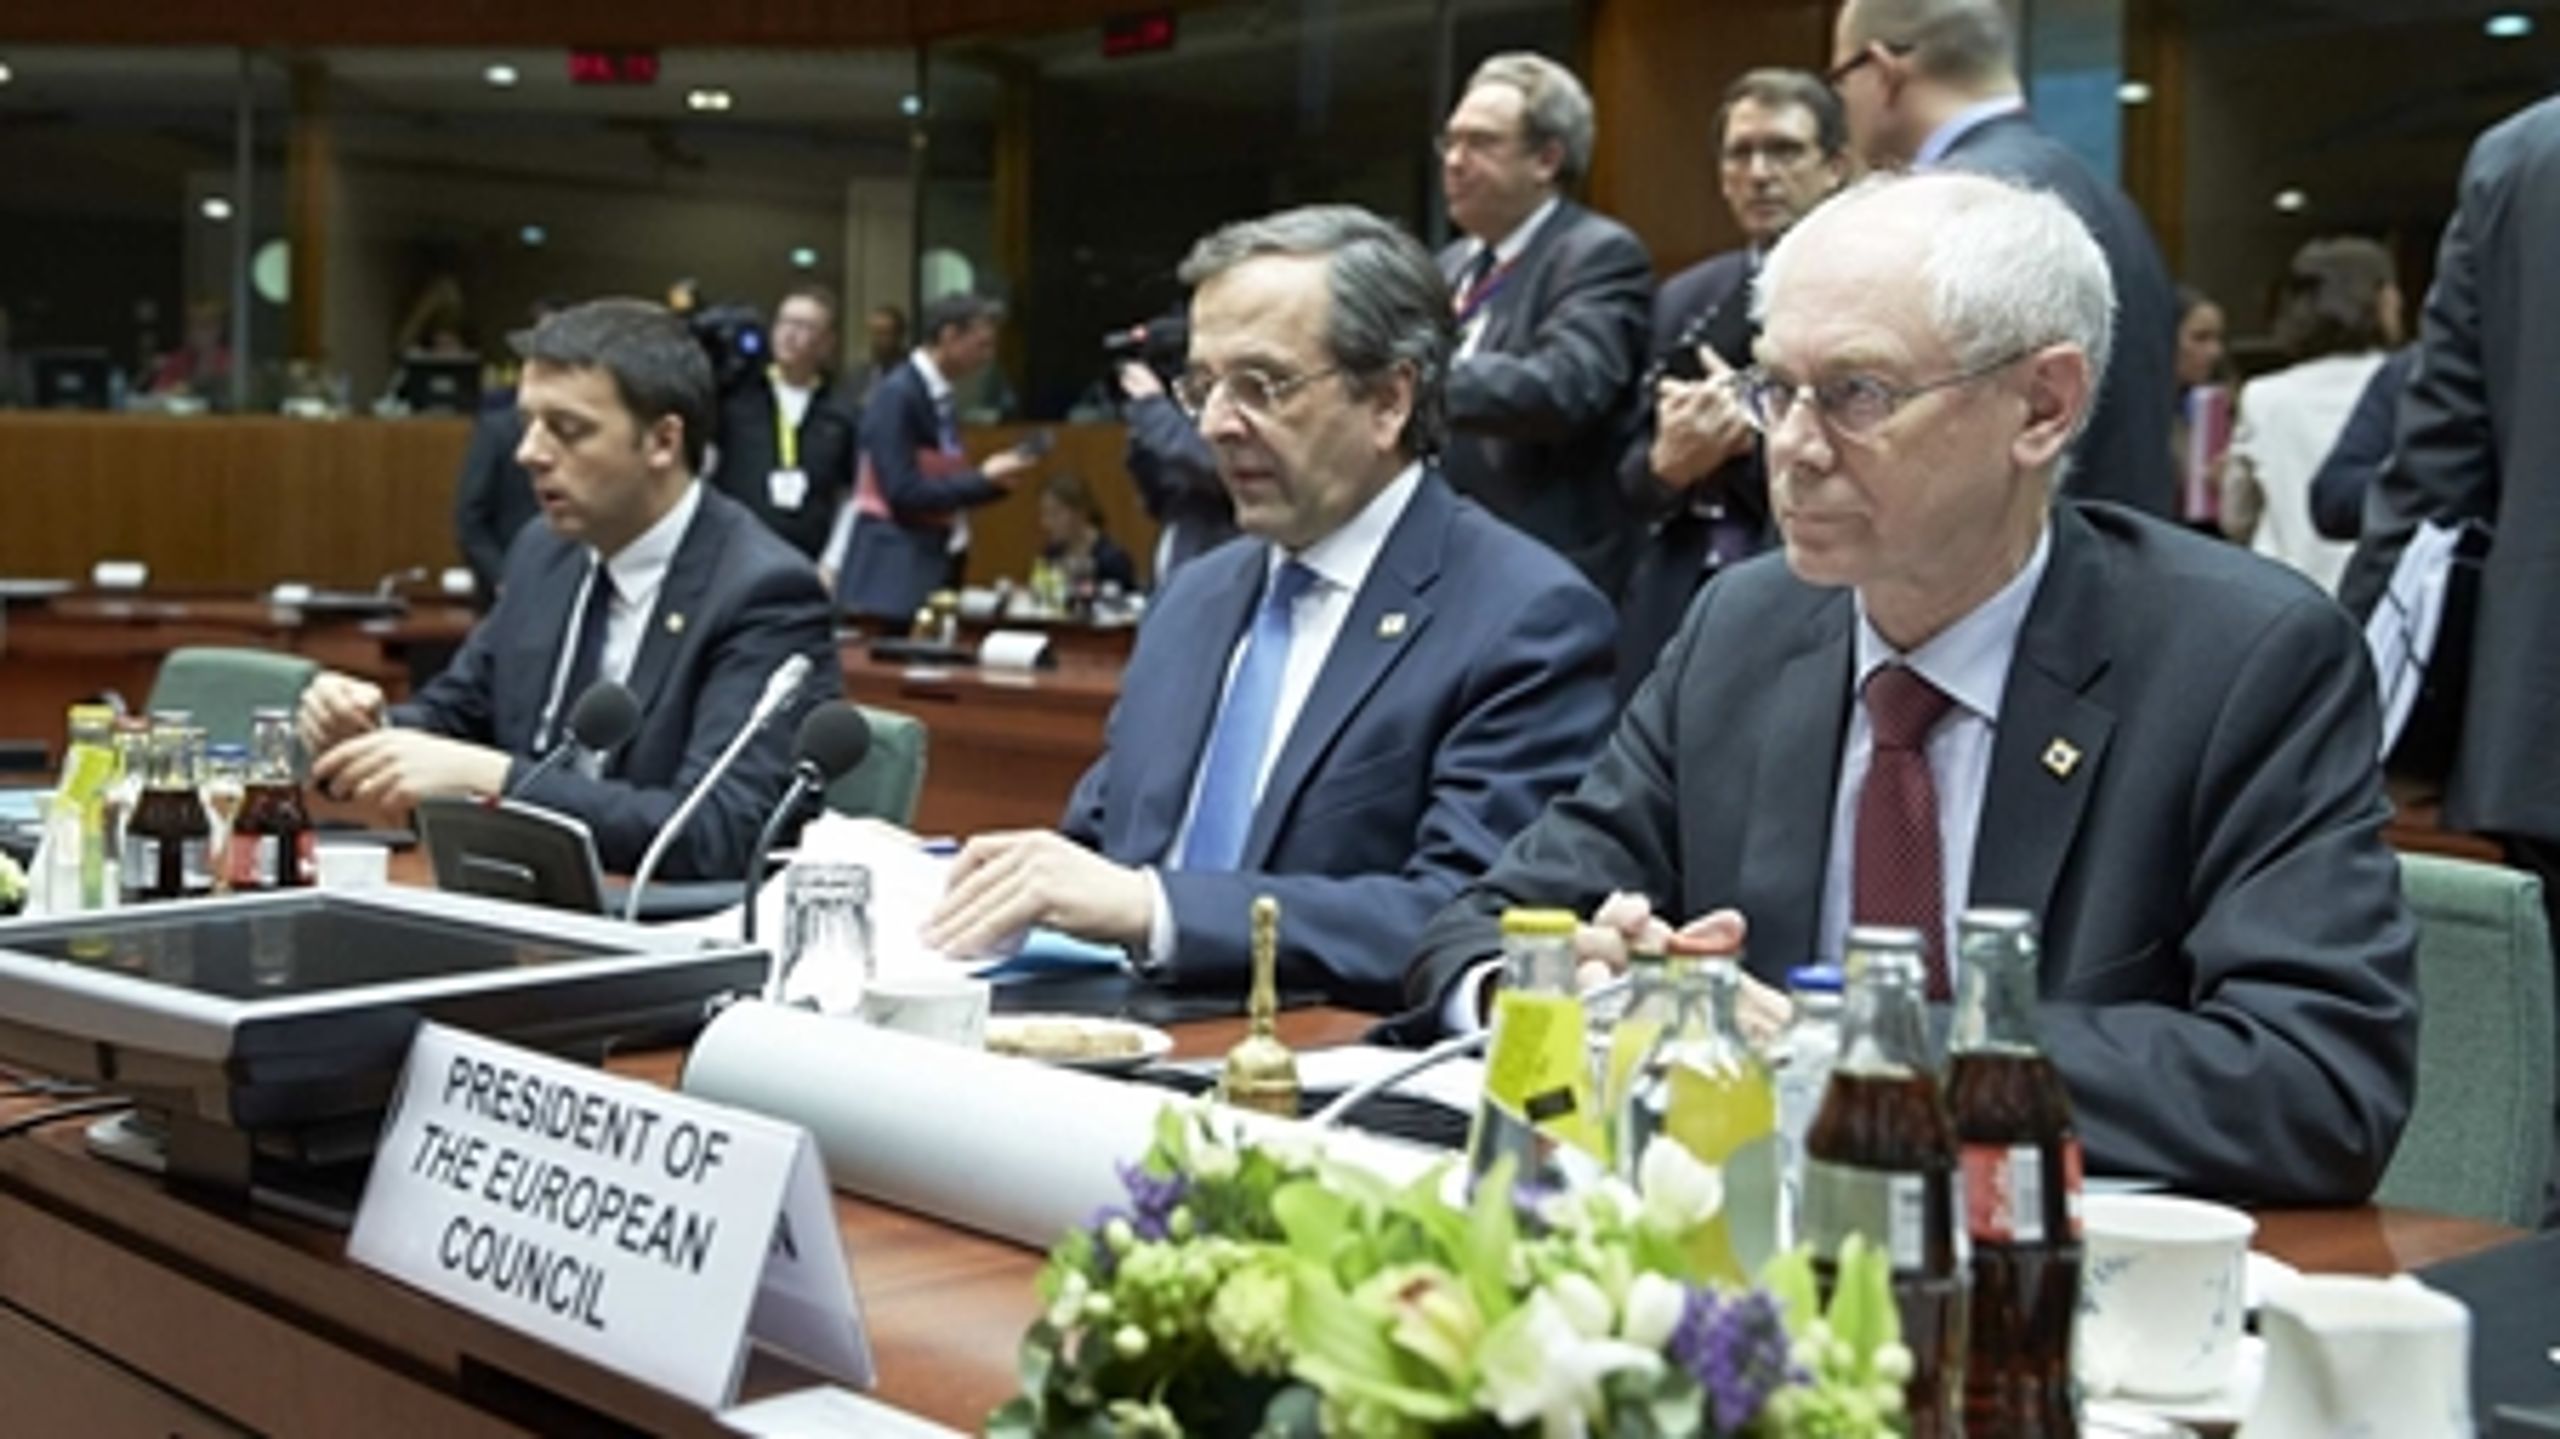 Den nye formand for Det Europæiske Råd overtager pladsen som mægler mellem EU's stats- og regeringschefer efter belgieren Herman Van Rompuy (t.h).